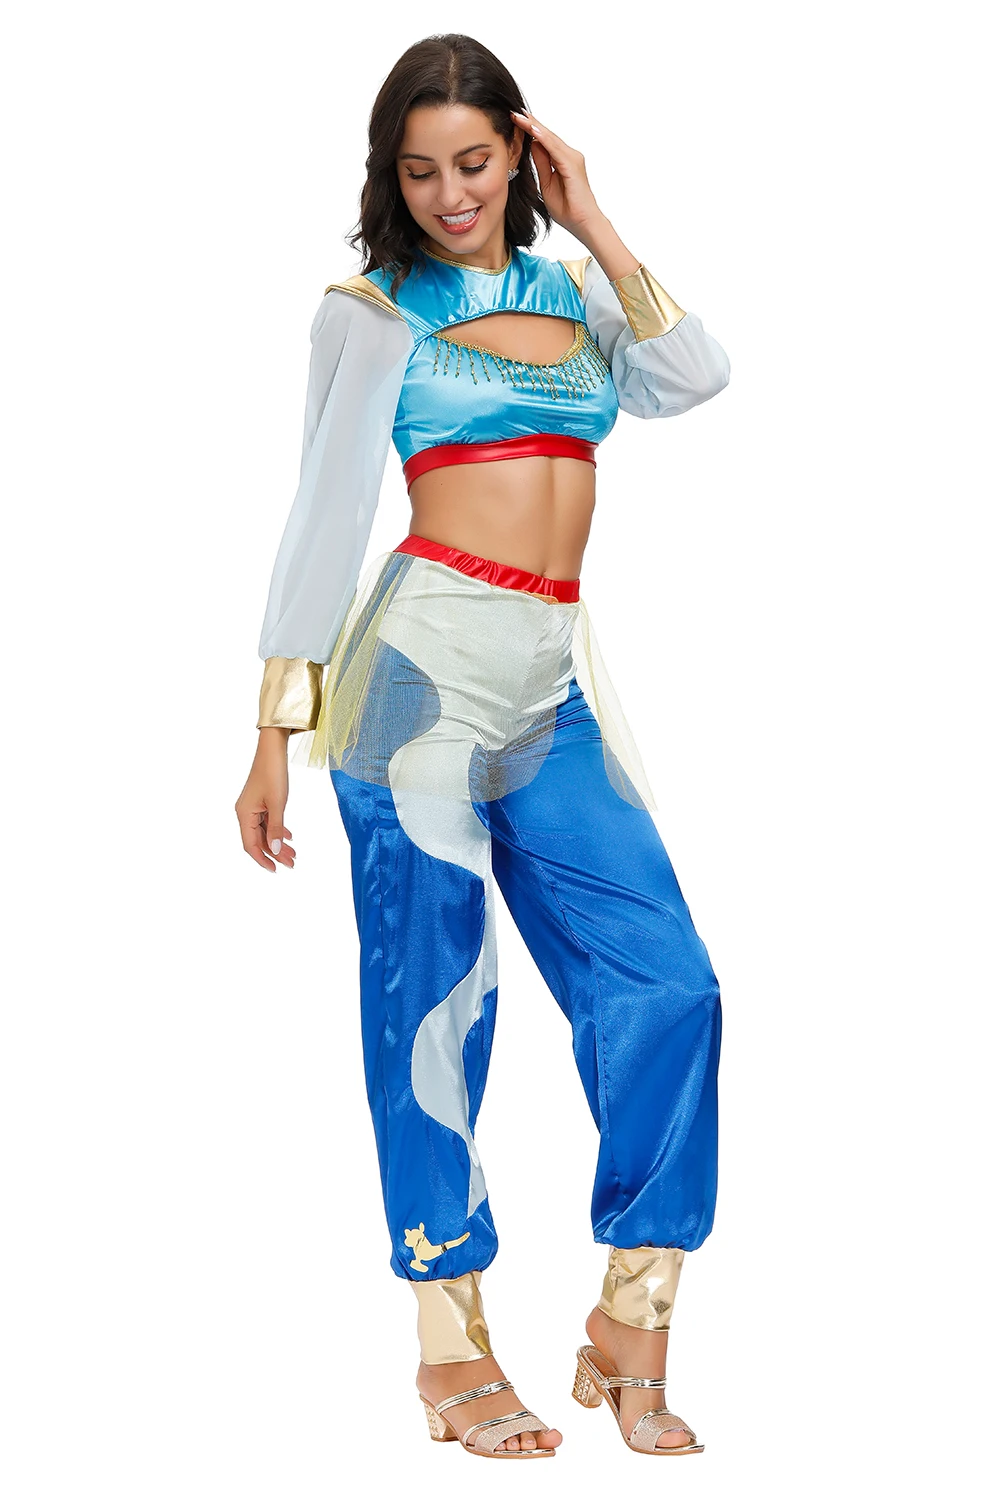 Aladdin Víla Princezná Jasmine Kostým pre Dospelých Žien Halloween Karneval Cosplay Party Zdobiť